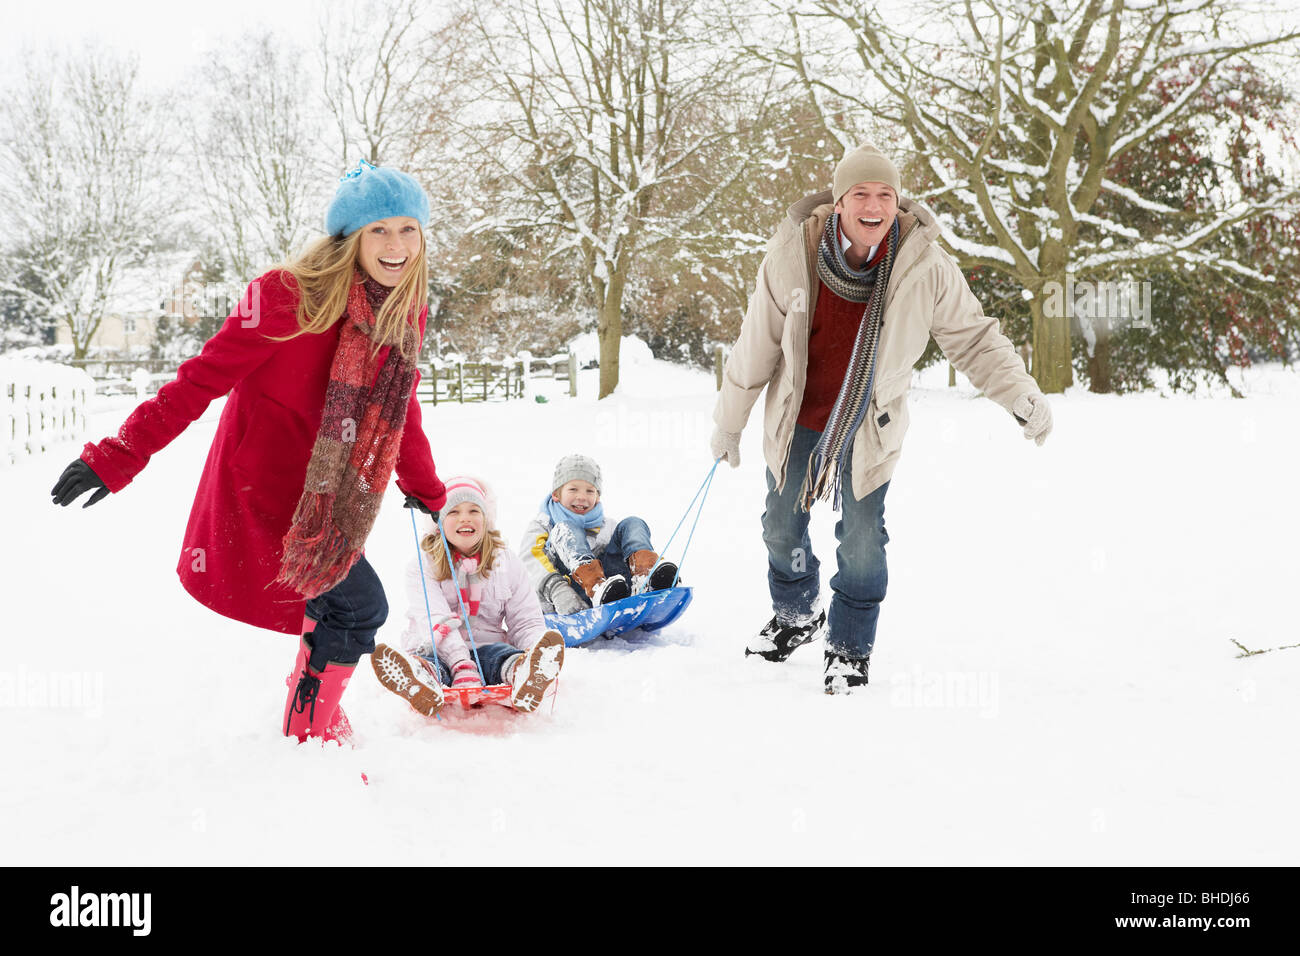 Familie ziehen Schlitten durch tief verschneite Landschaft Stockfotografie  - Alamy